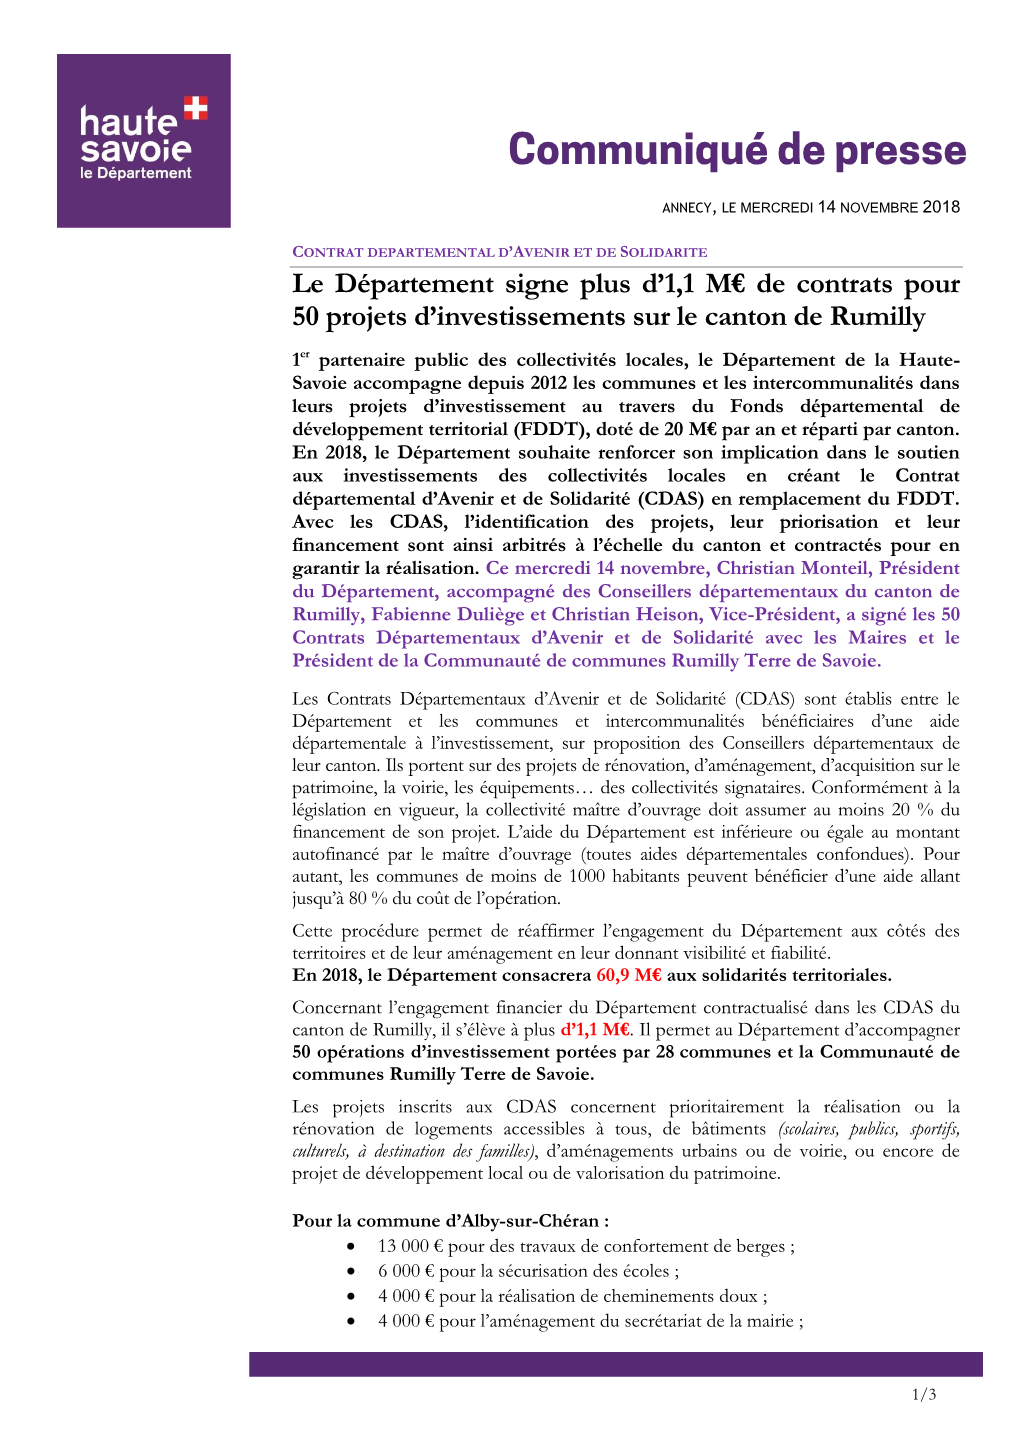 Le Département Signe Plus D'1,1 M€ De Contrats Pour 50 Projets D'investissements Sur Le Canton De Rumilly